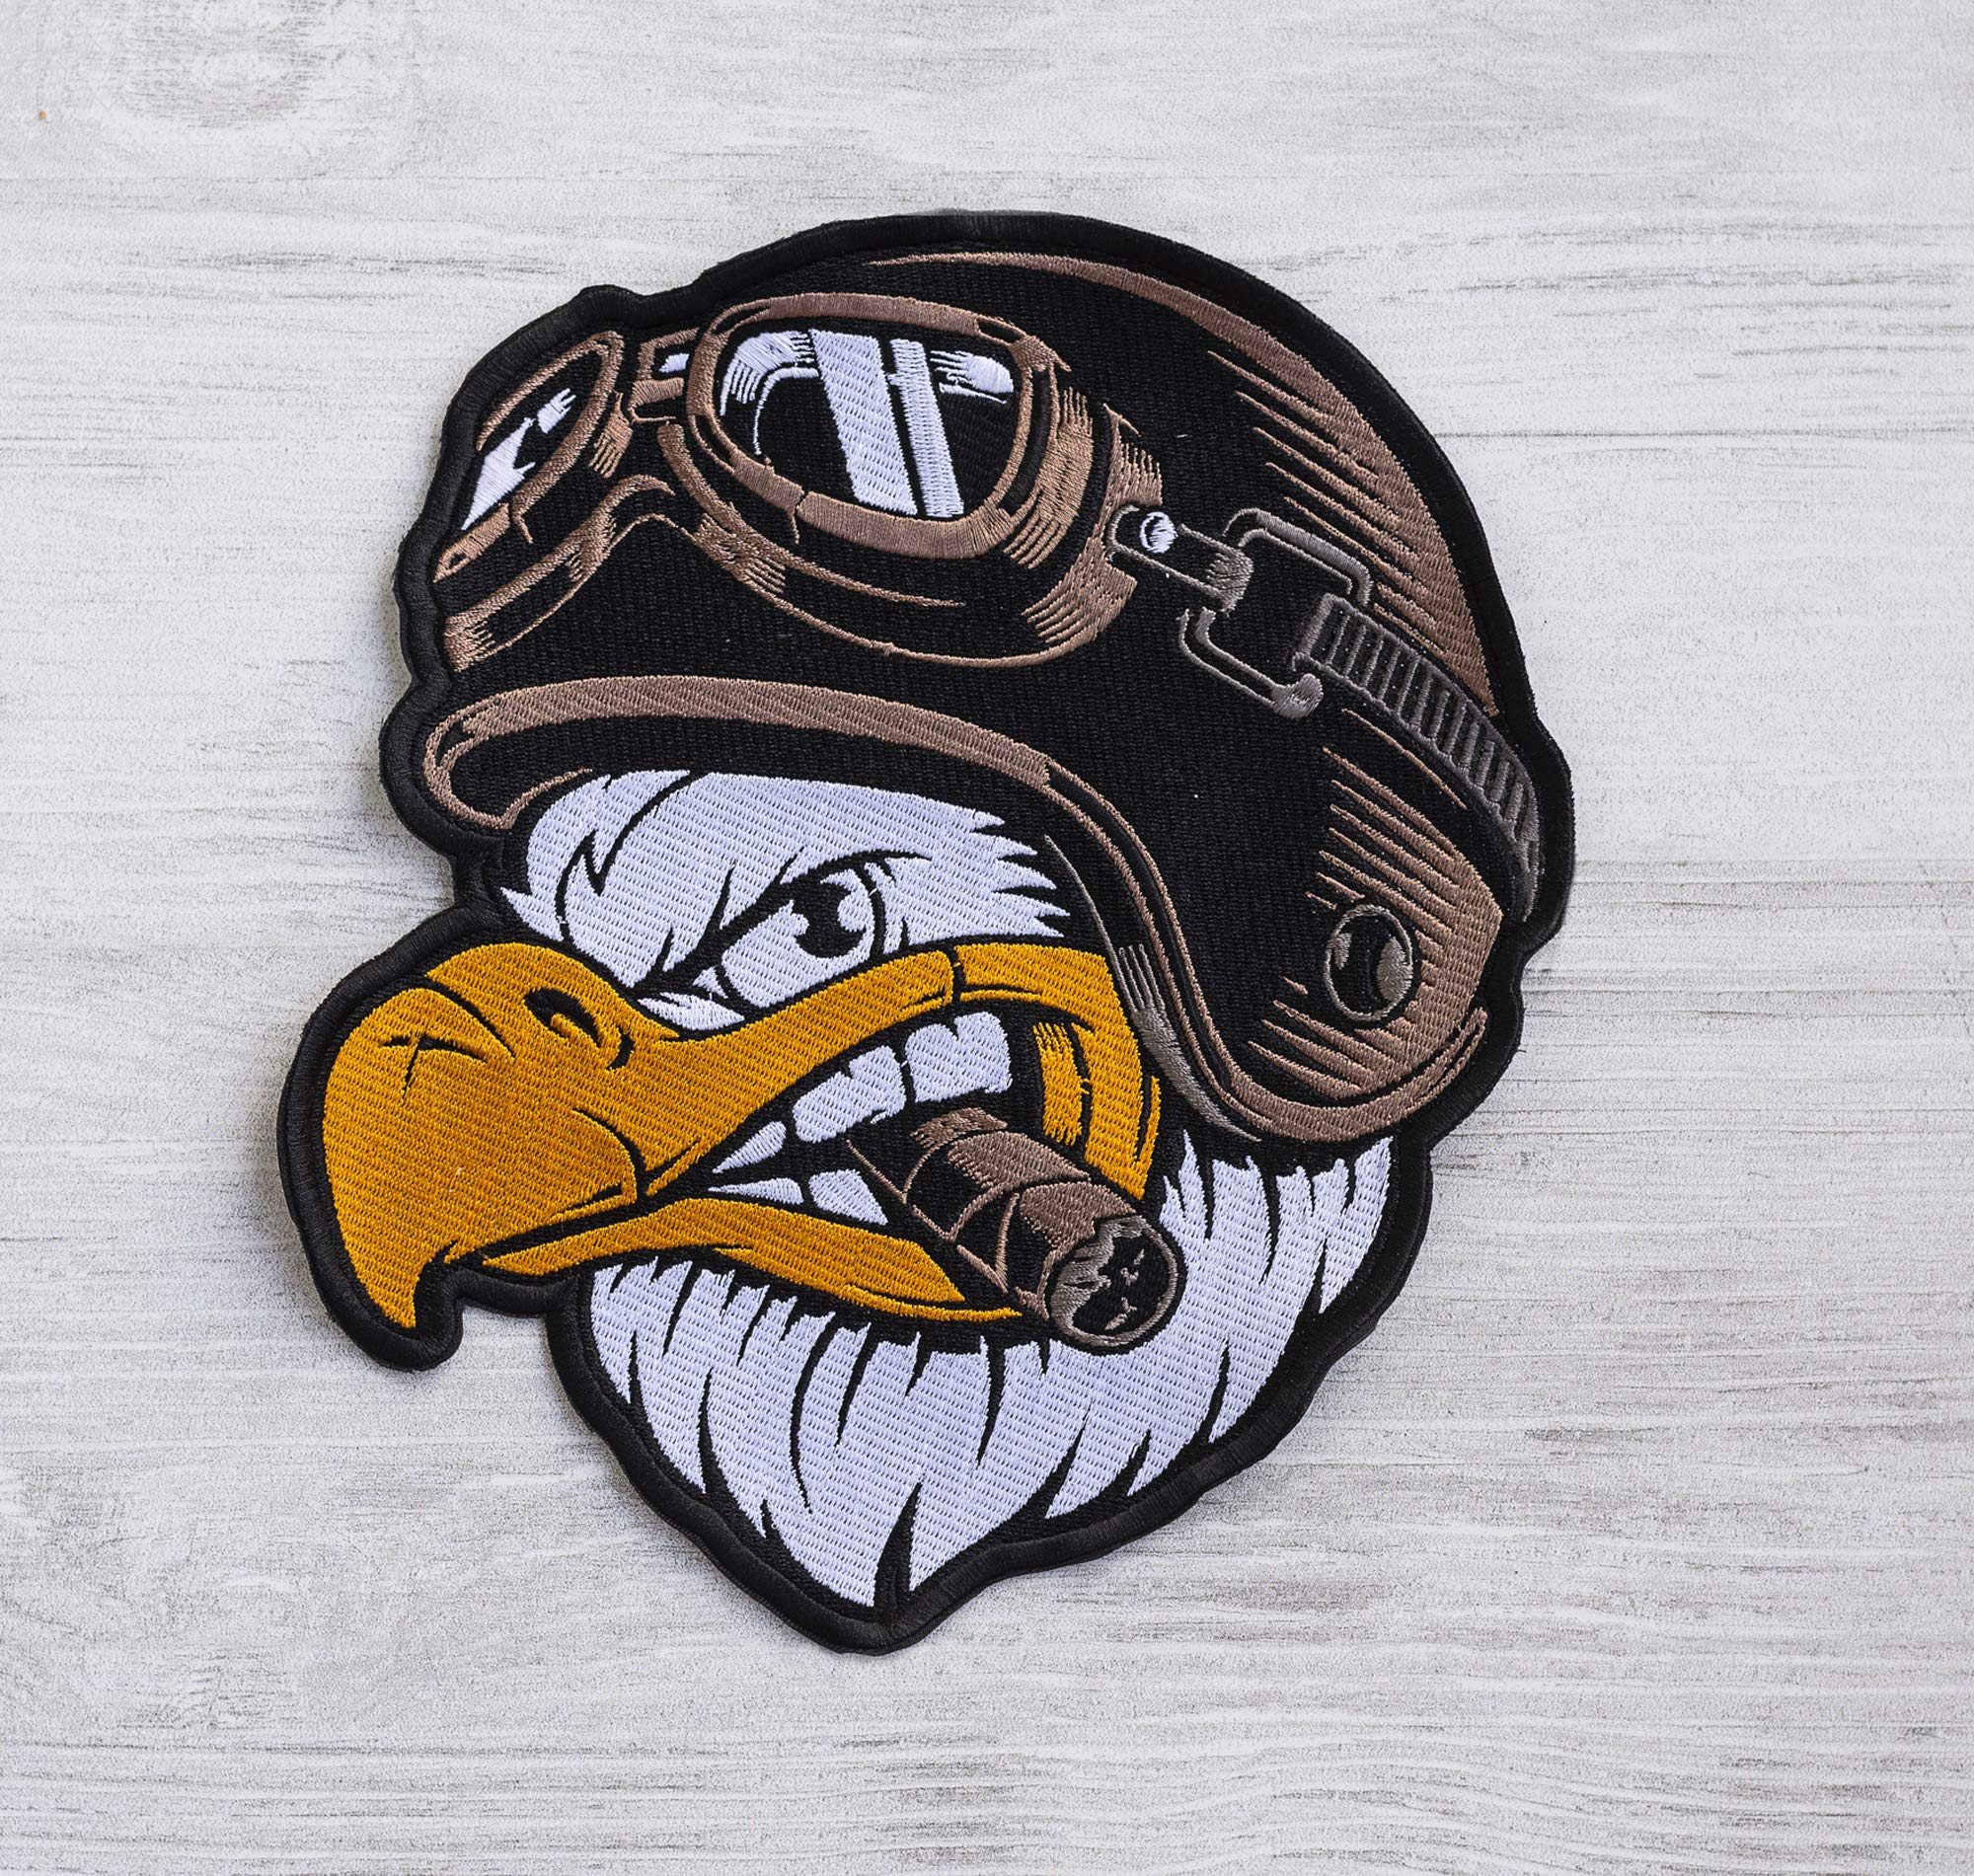 Handgefertigter Adler-Piloten-Aufnäher, große Stickerei, zum Aufbügeln, Jackenrücken, Motorrad-Aufnäher, Urban Art Patch